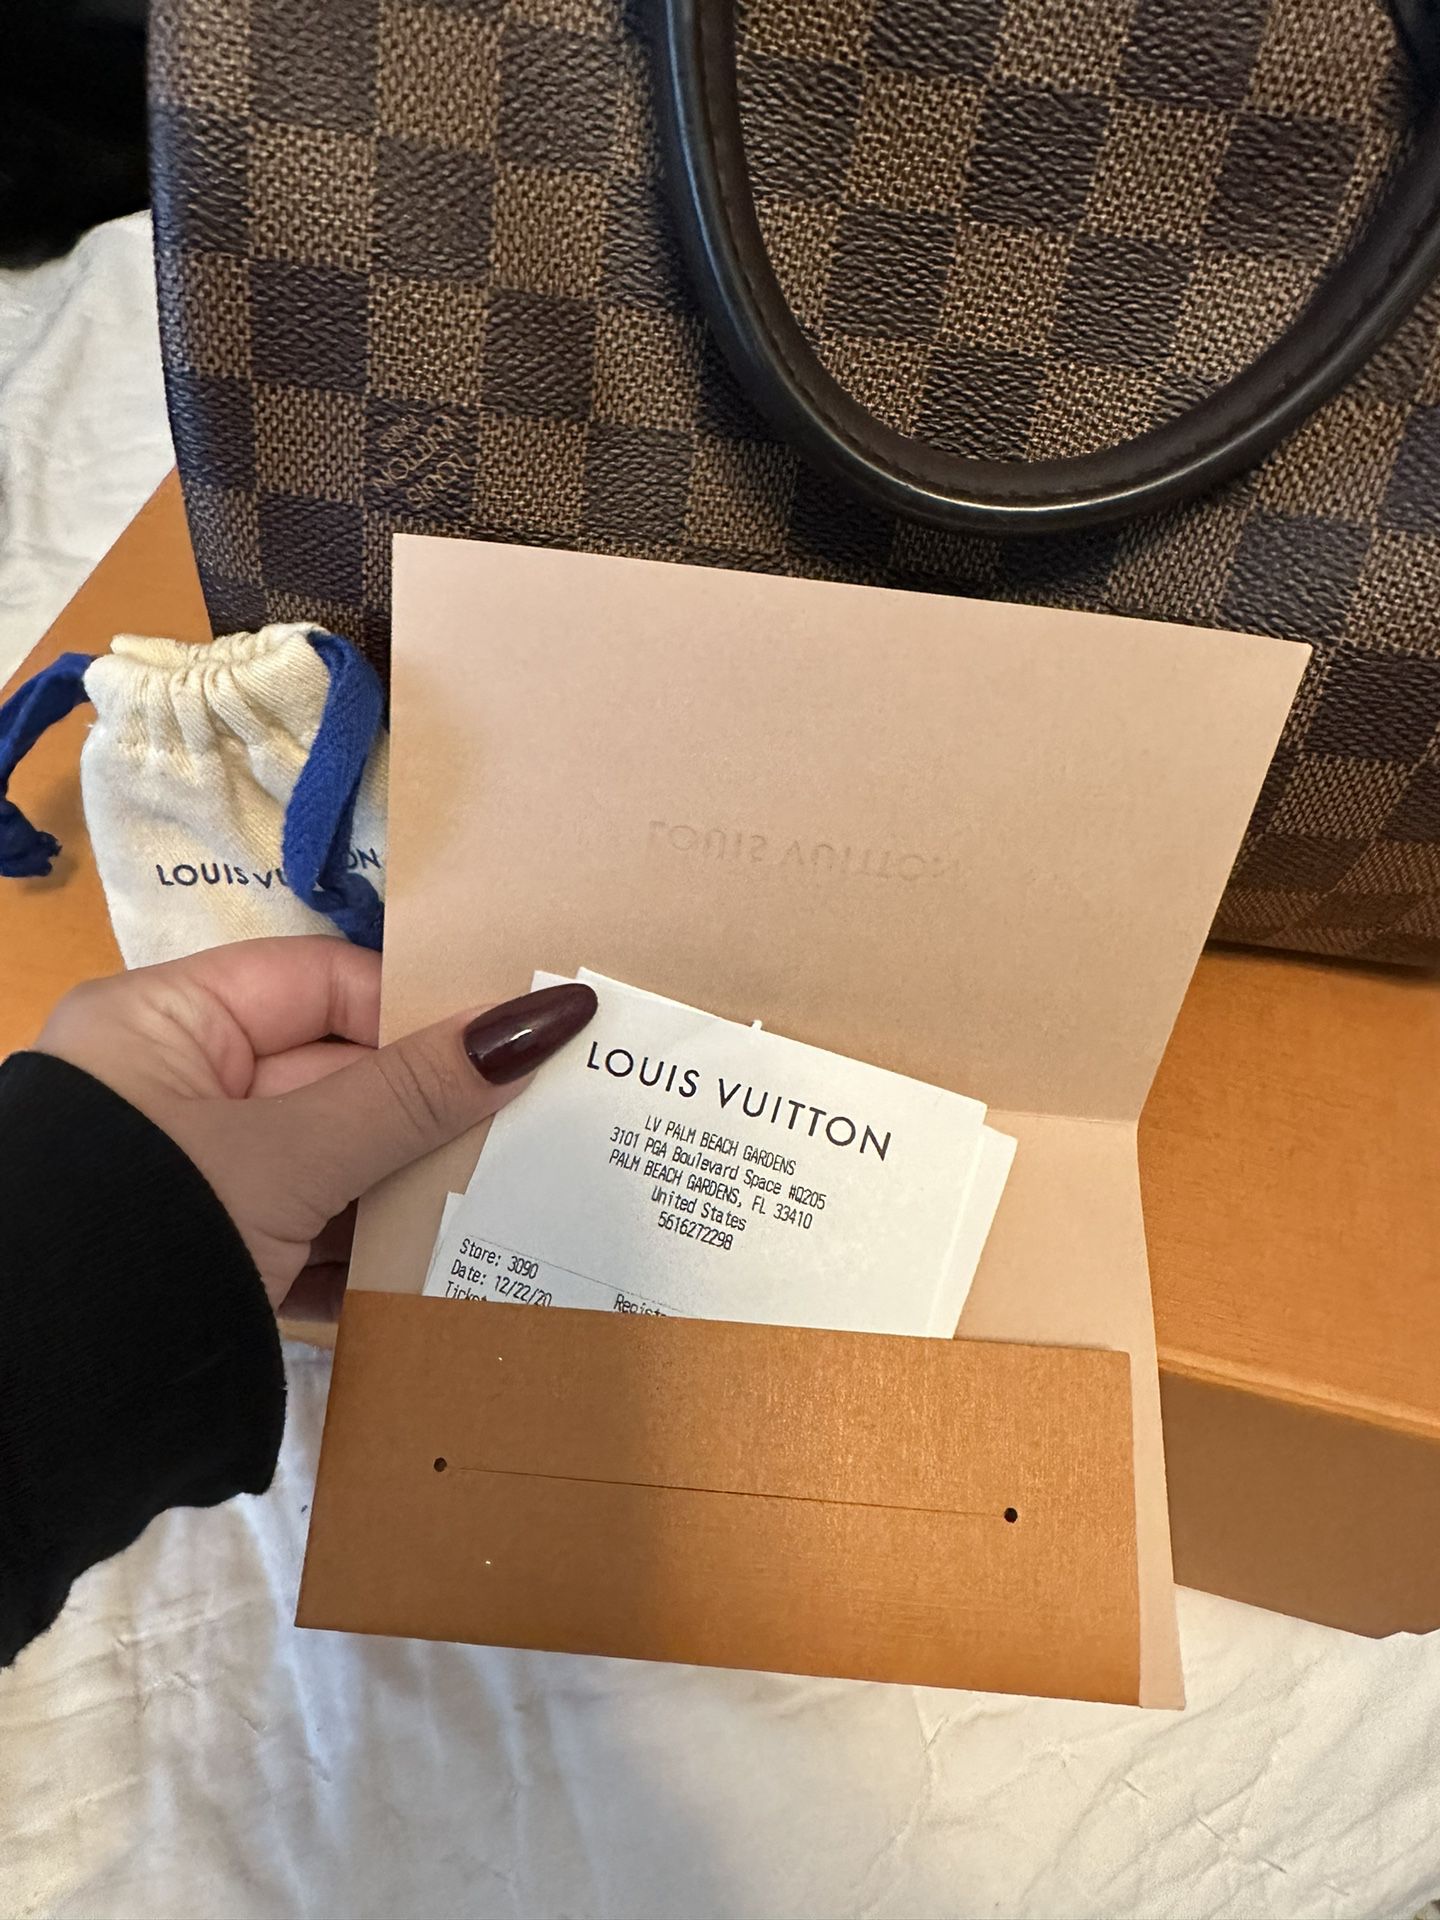 Louis Vuitton Soft Lockit Handbag for Sale in Jupiter Inlet, FL - OfferUp